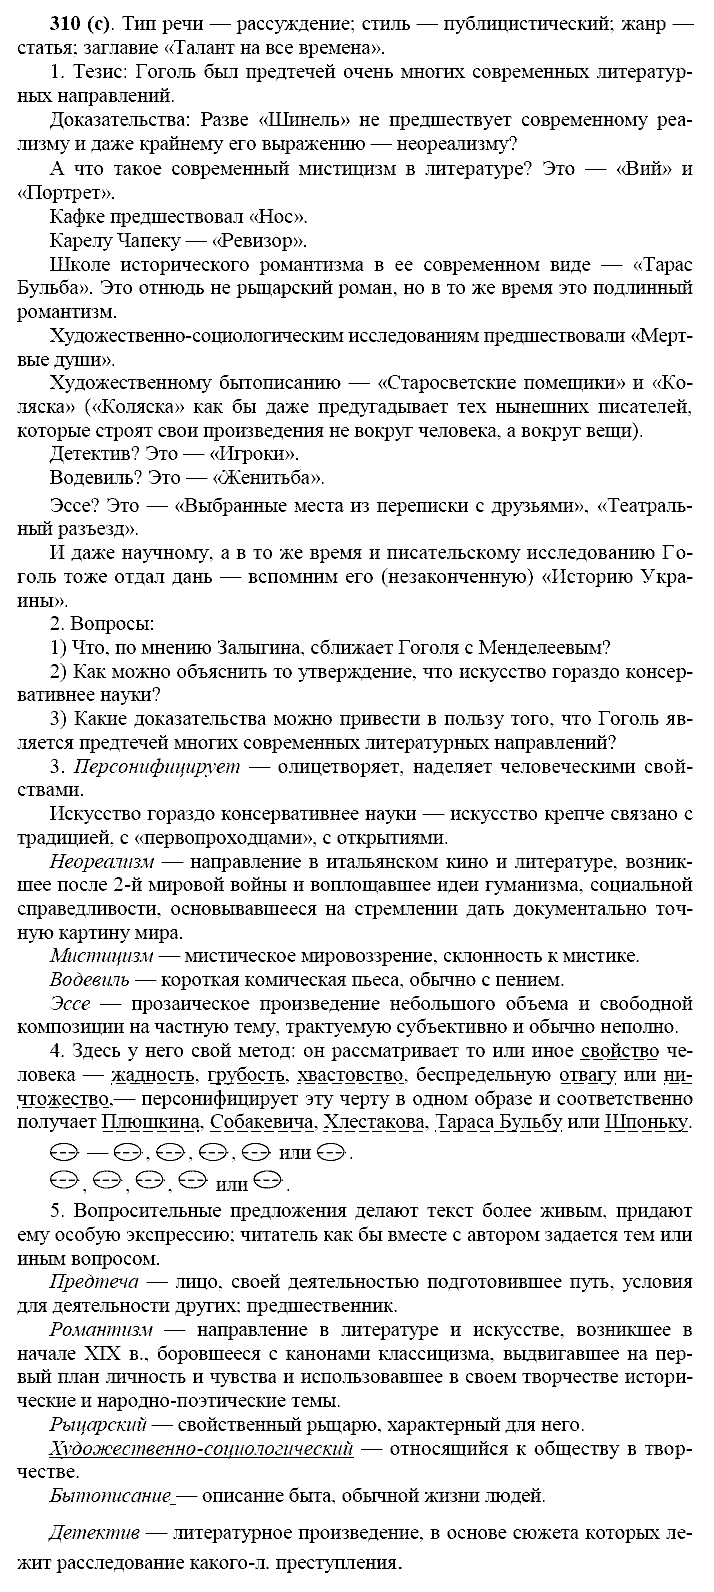 Русский язык, 11 класс, Власенков, Рыбченков, 2009-2014, задание: 310 (с)